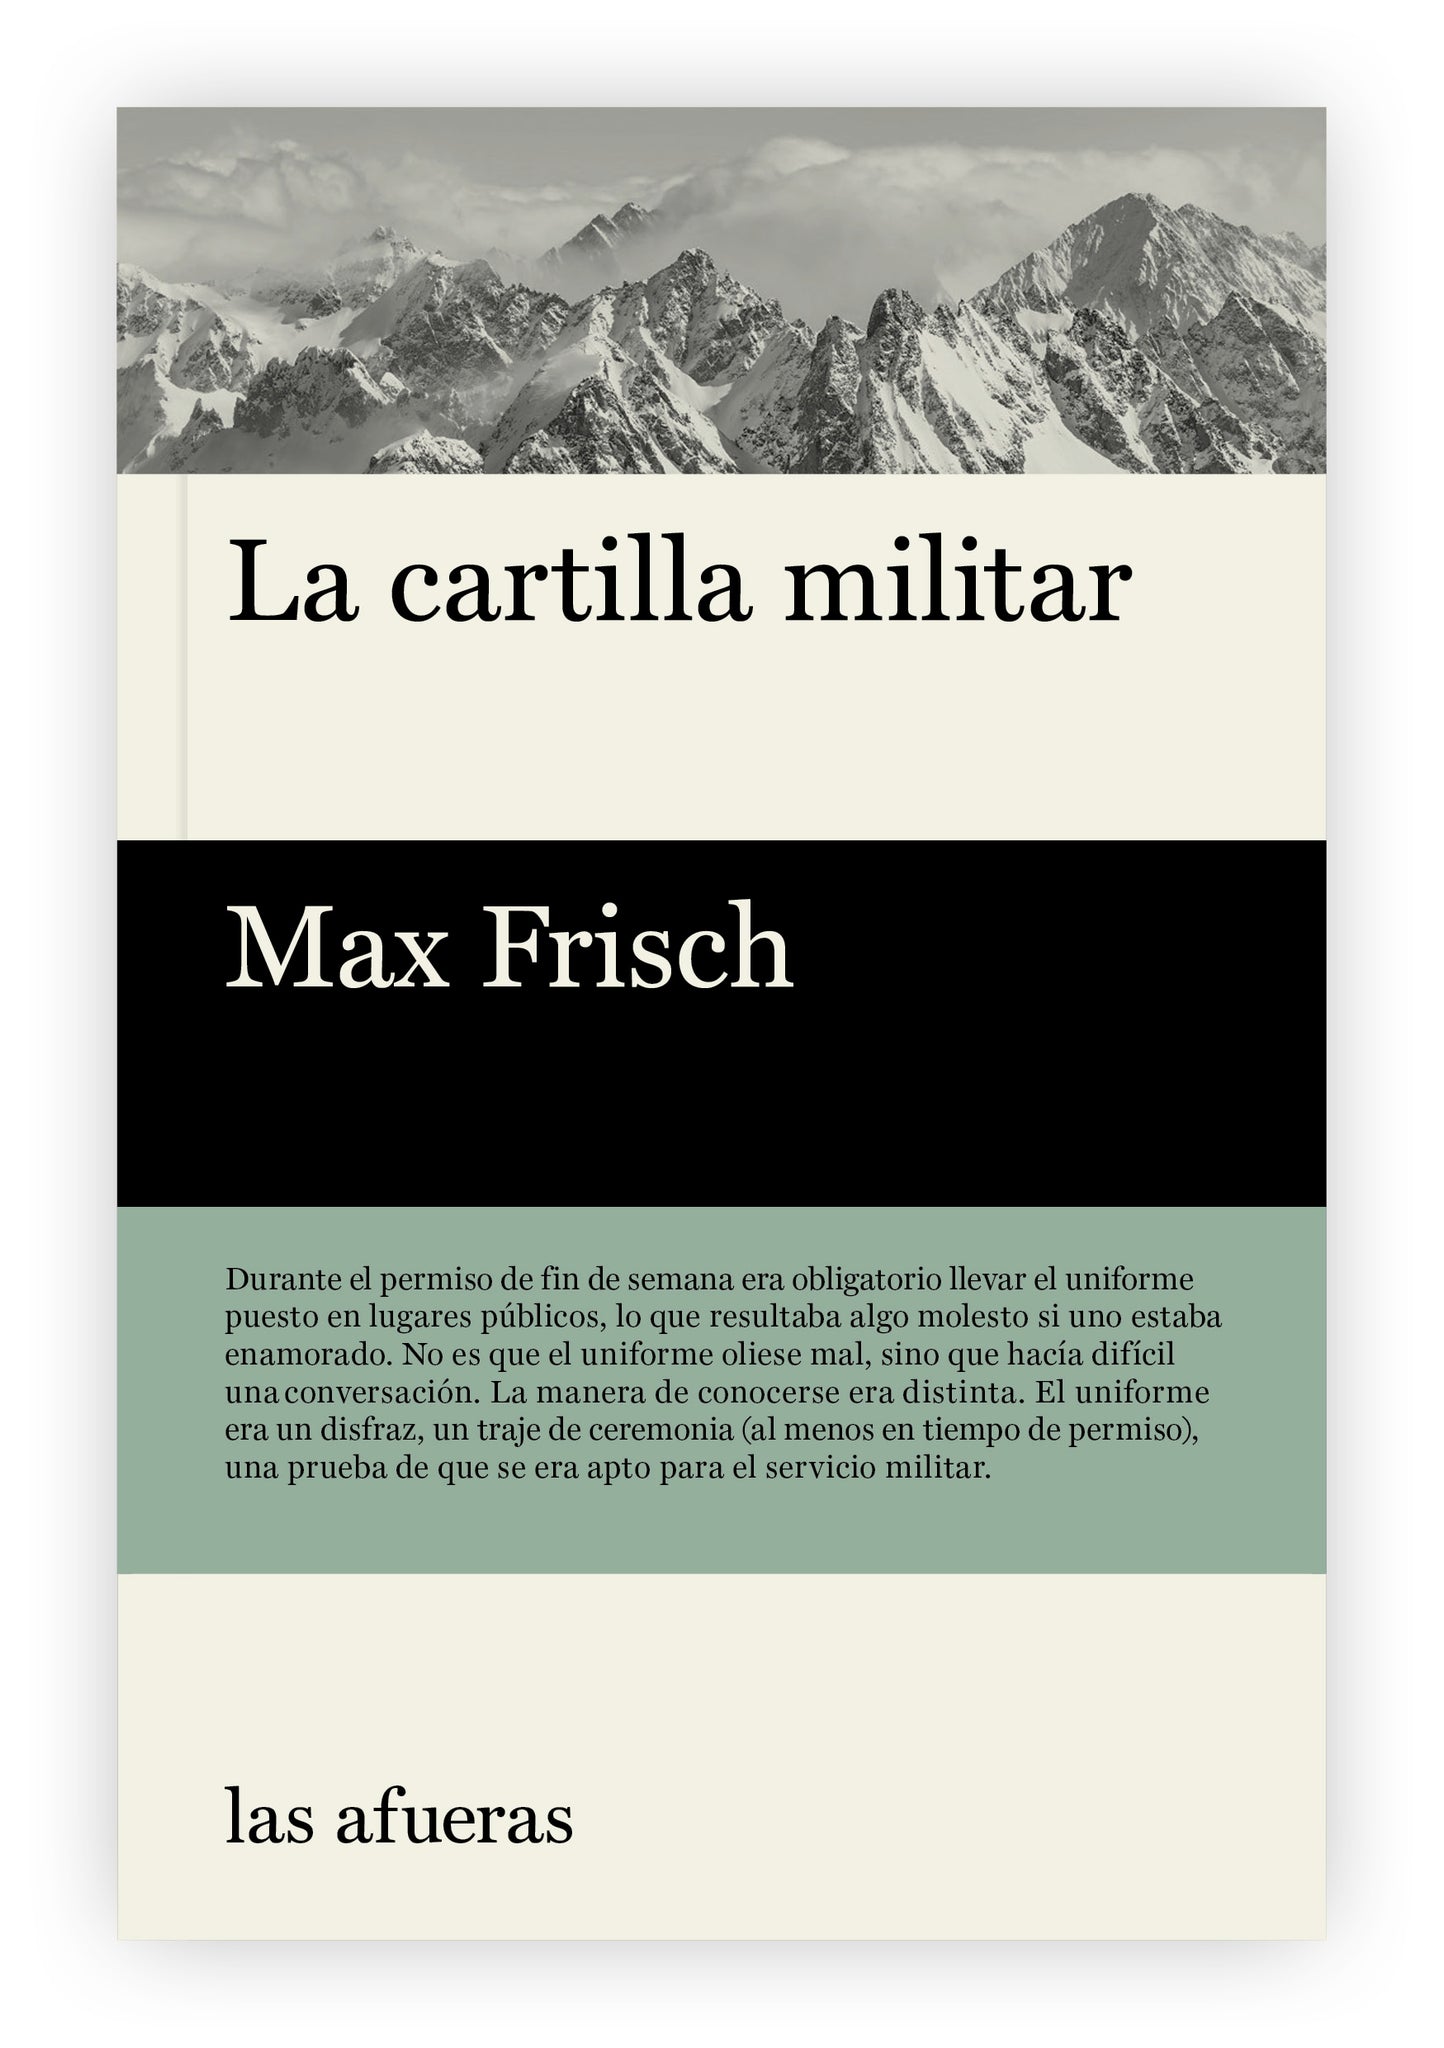 "La cartilla militar", de Max Frisch